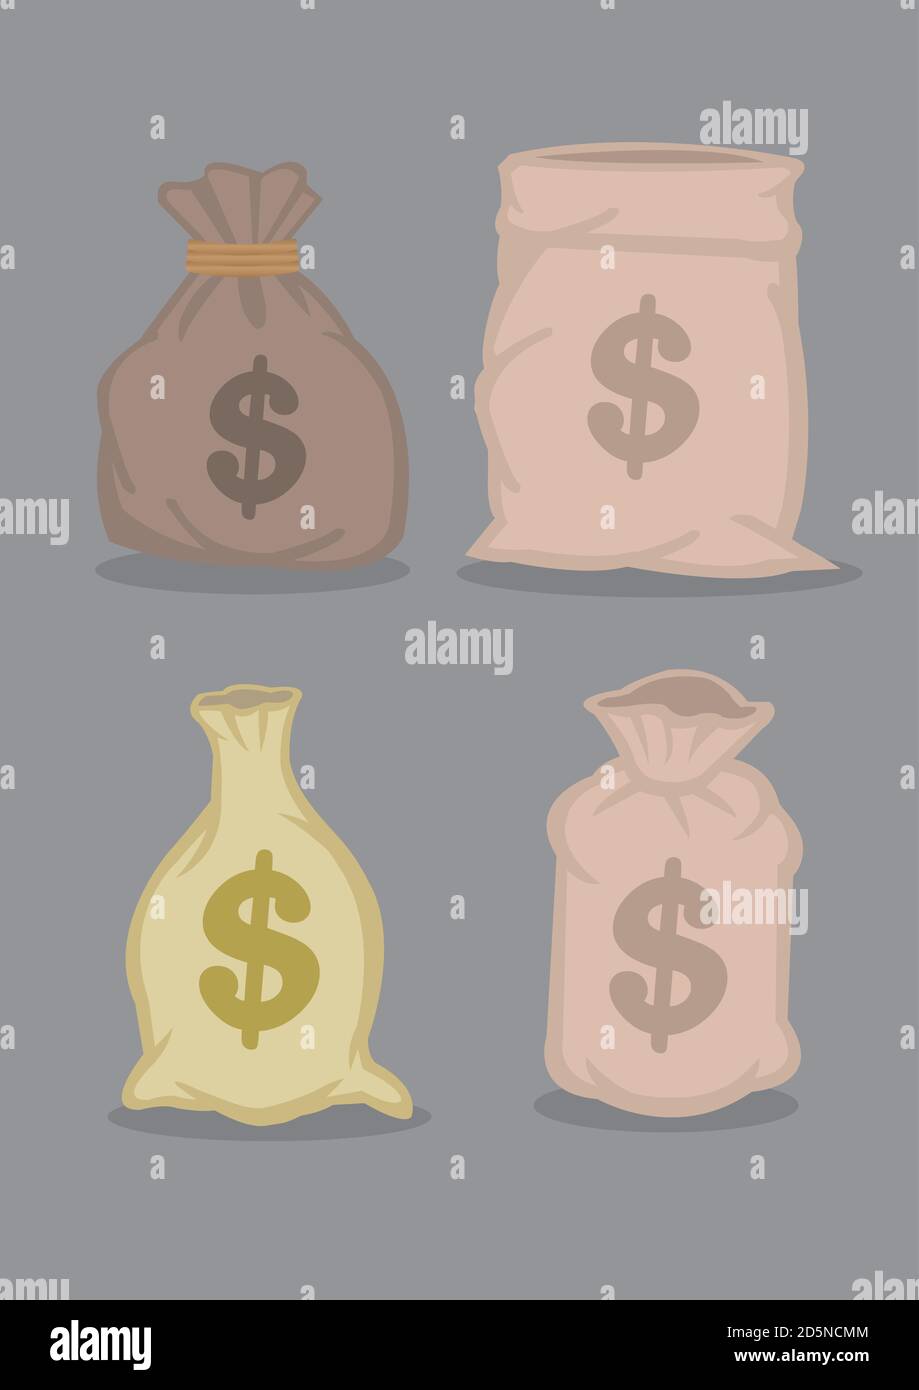 Satz von vier Designs von Säcken voller Geld mit Dollar-Zeichen. Cartoon-Vektor-Illustrationen auf grauem Hintergrund isoliert. Stock Vektor